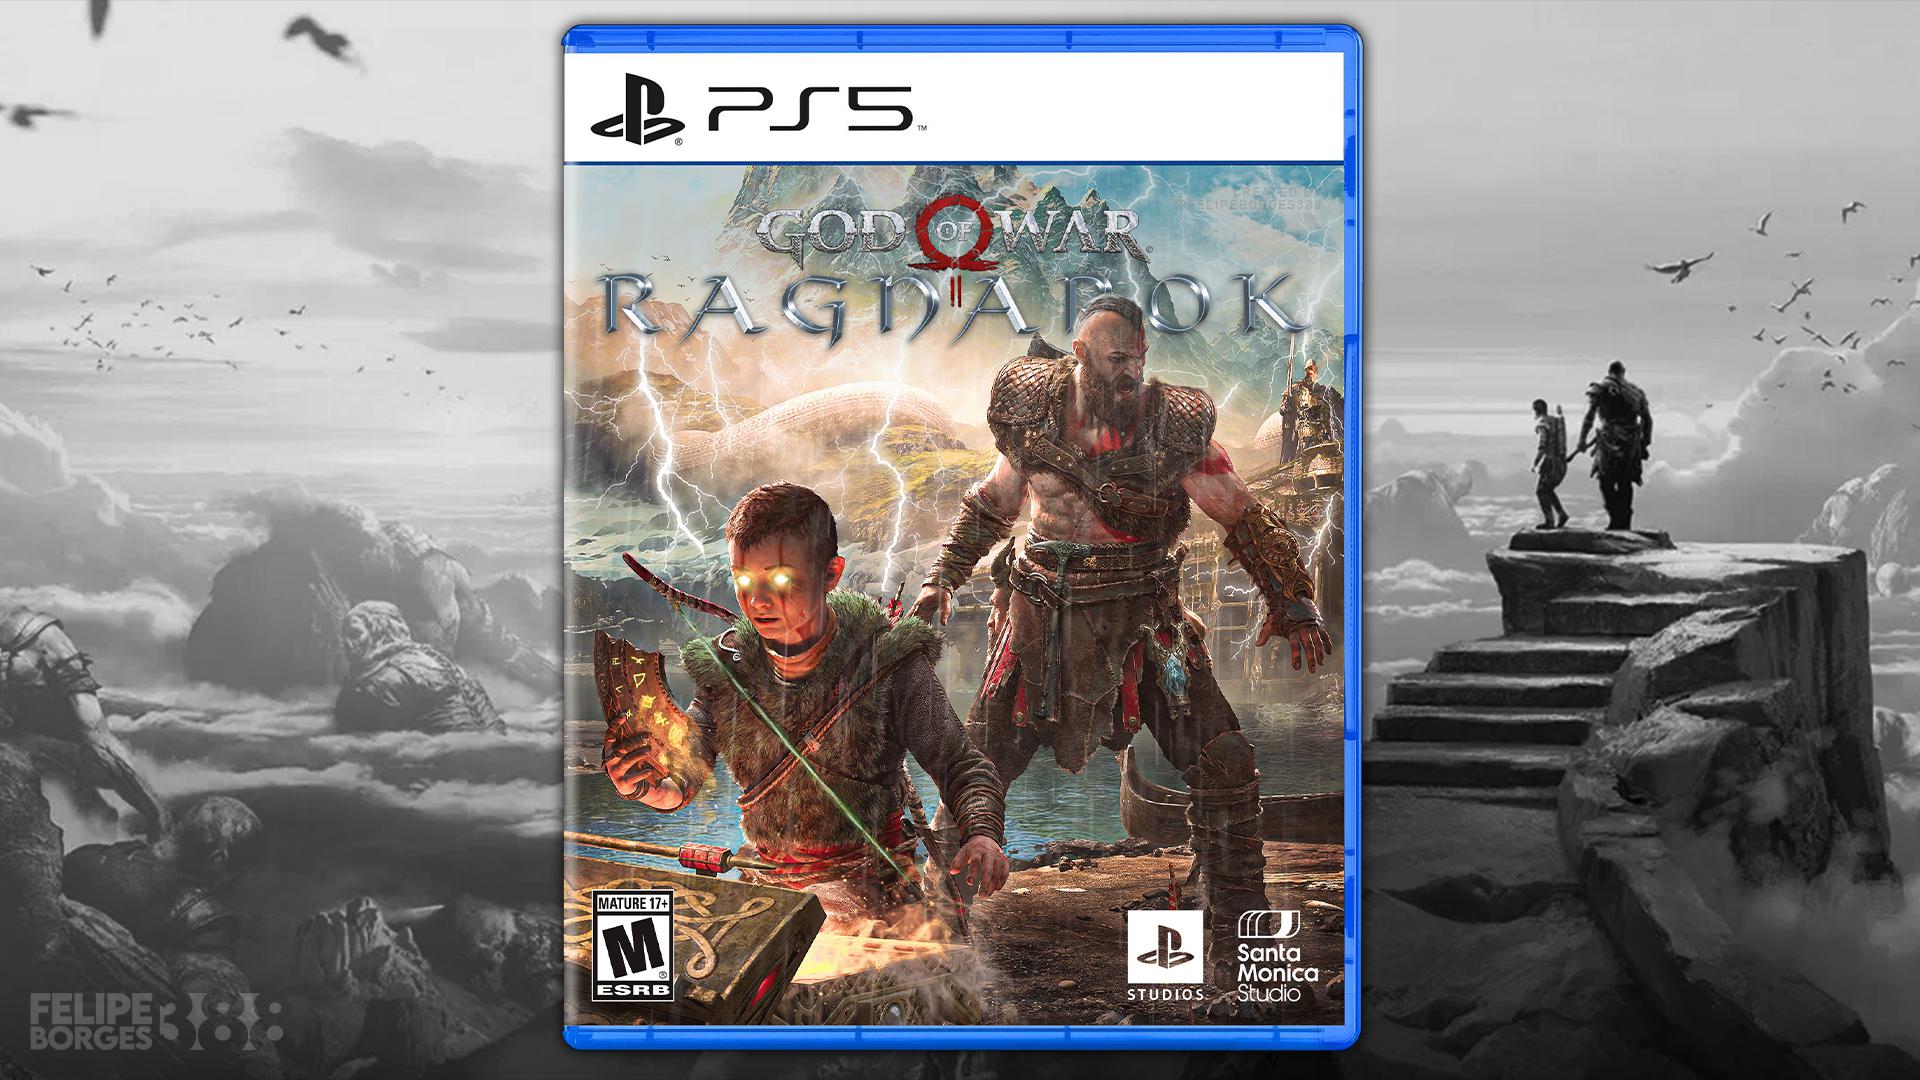 God Of War Ragnarok é um exclusivo da Sony para PlayStation 5 e também existem rumores de que pode chegar ao PS4 em 2021. Foto por: Felipeborges388